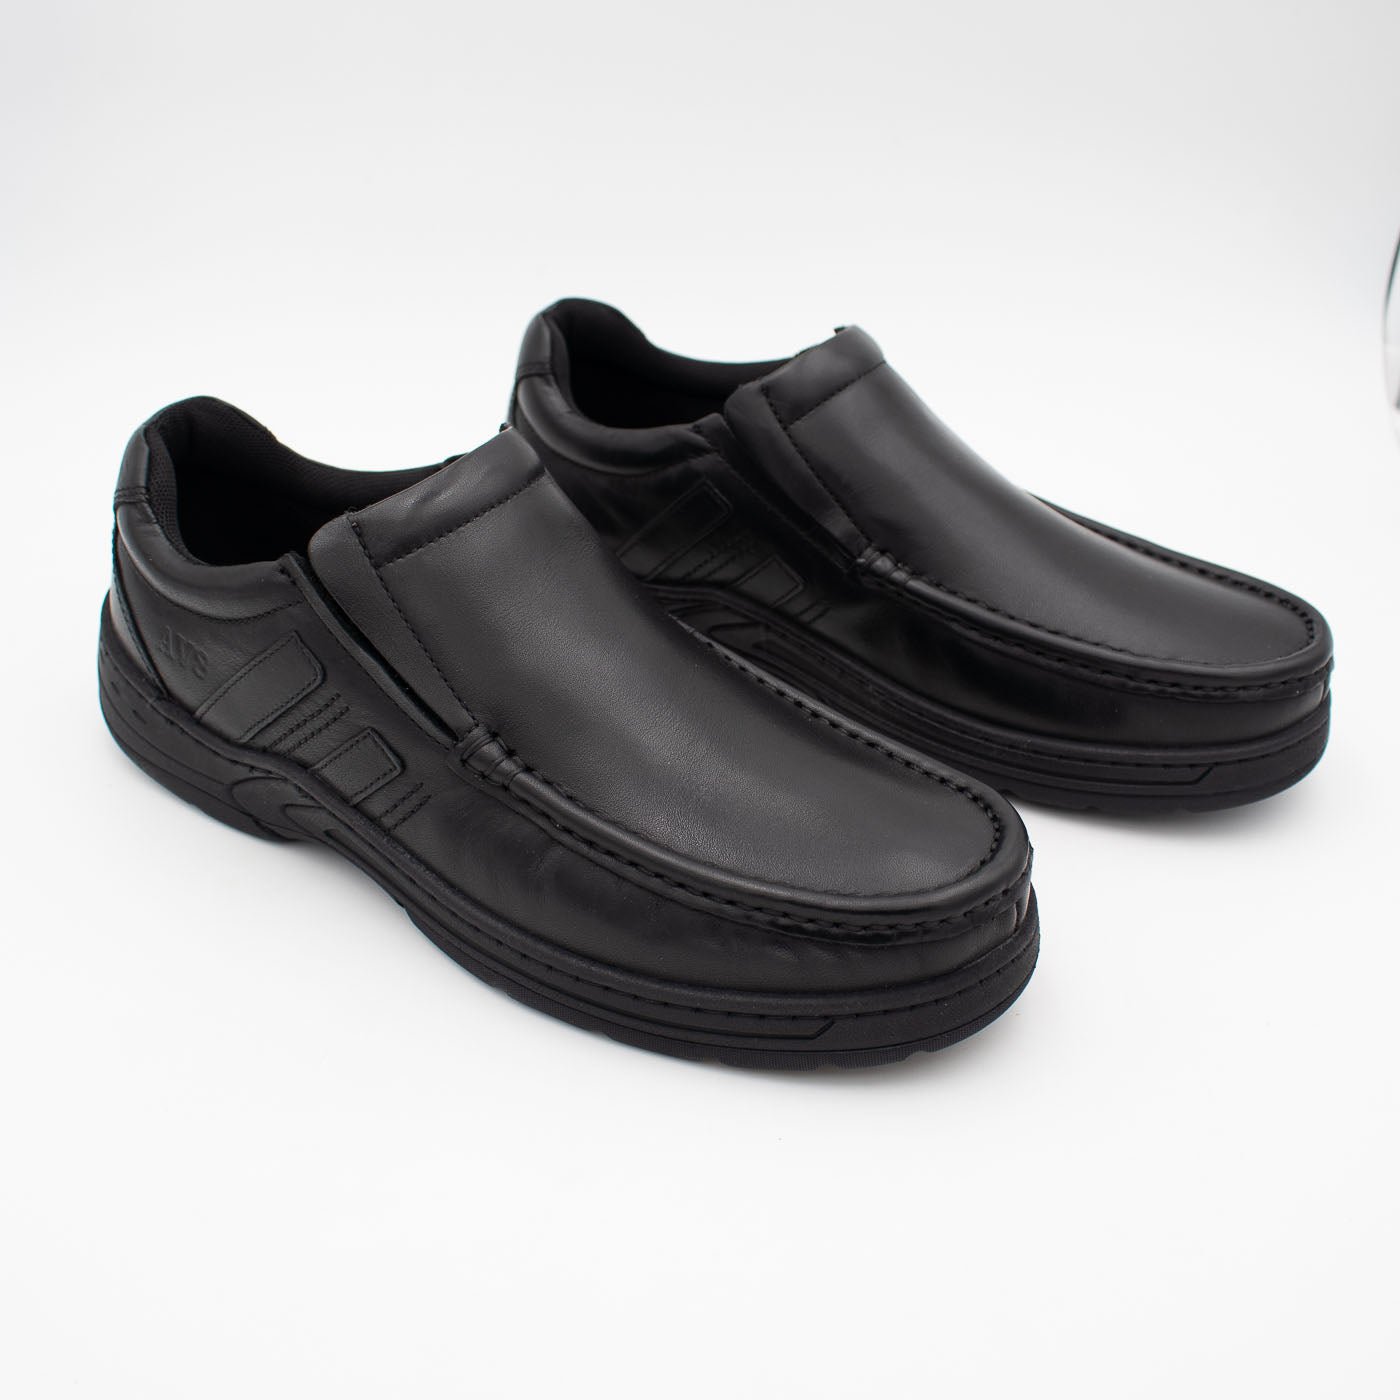 Front view of AV8 Kalvin Leather Slip-On shoe."